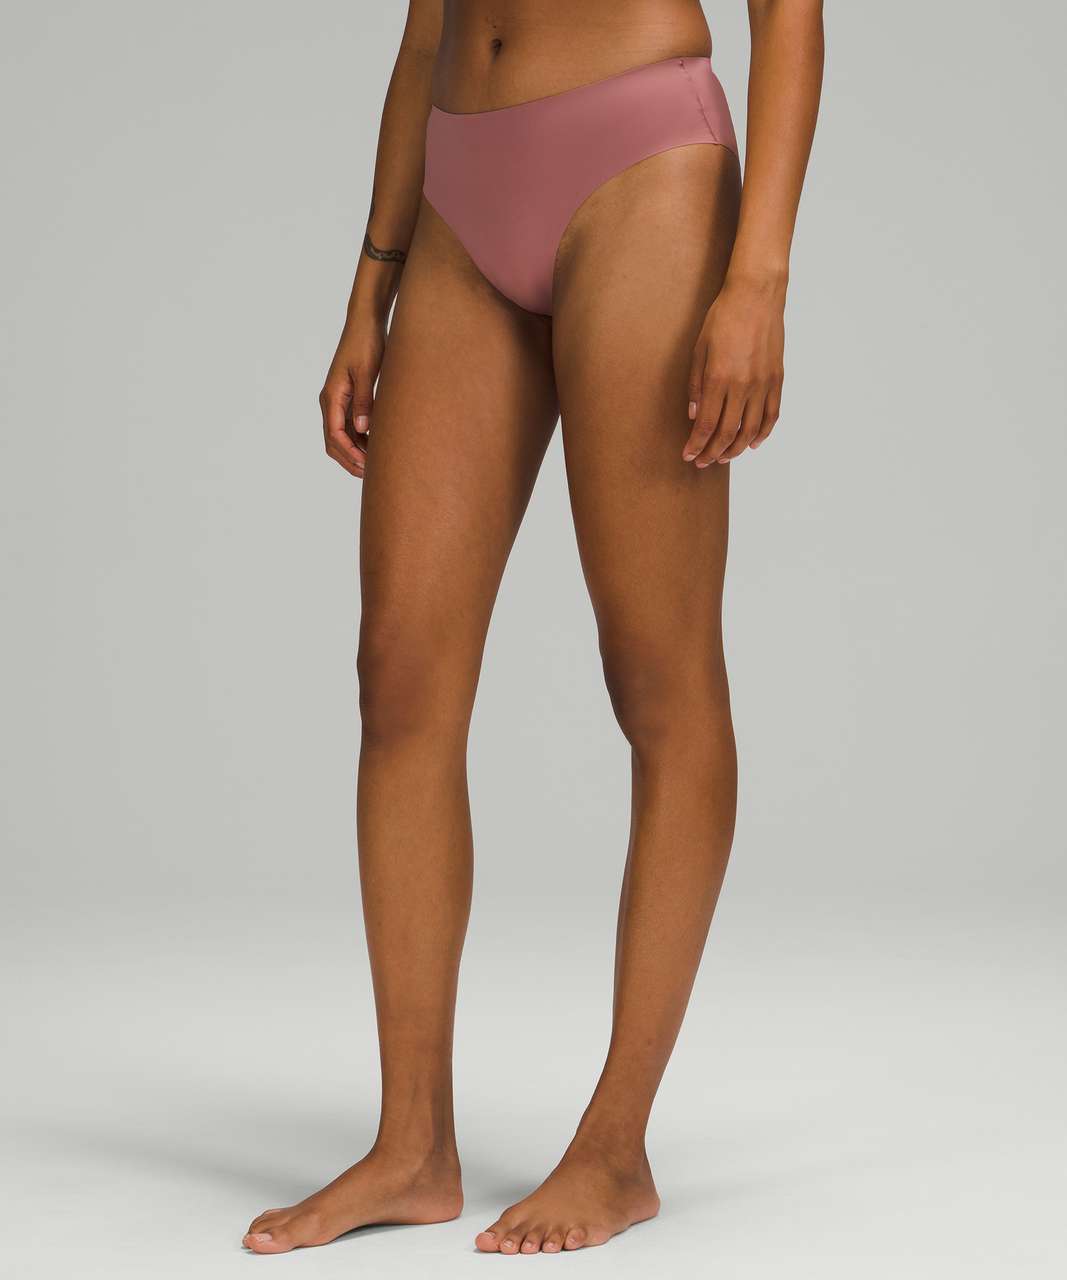 Lululemon InvisiWear Mid Rise Cheeky Bikini Underwear 3 Pack - Ocean Air / Spiced Chai / Gold Spice